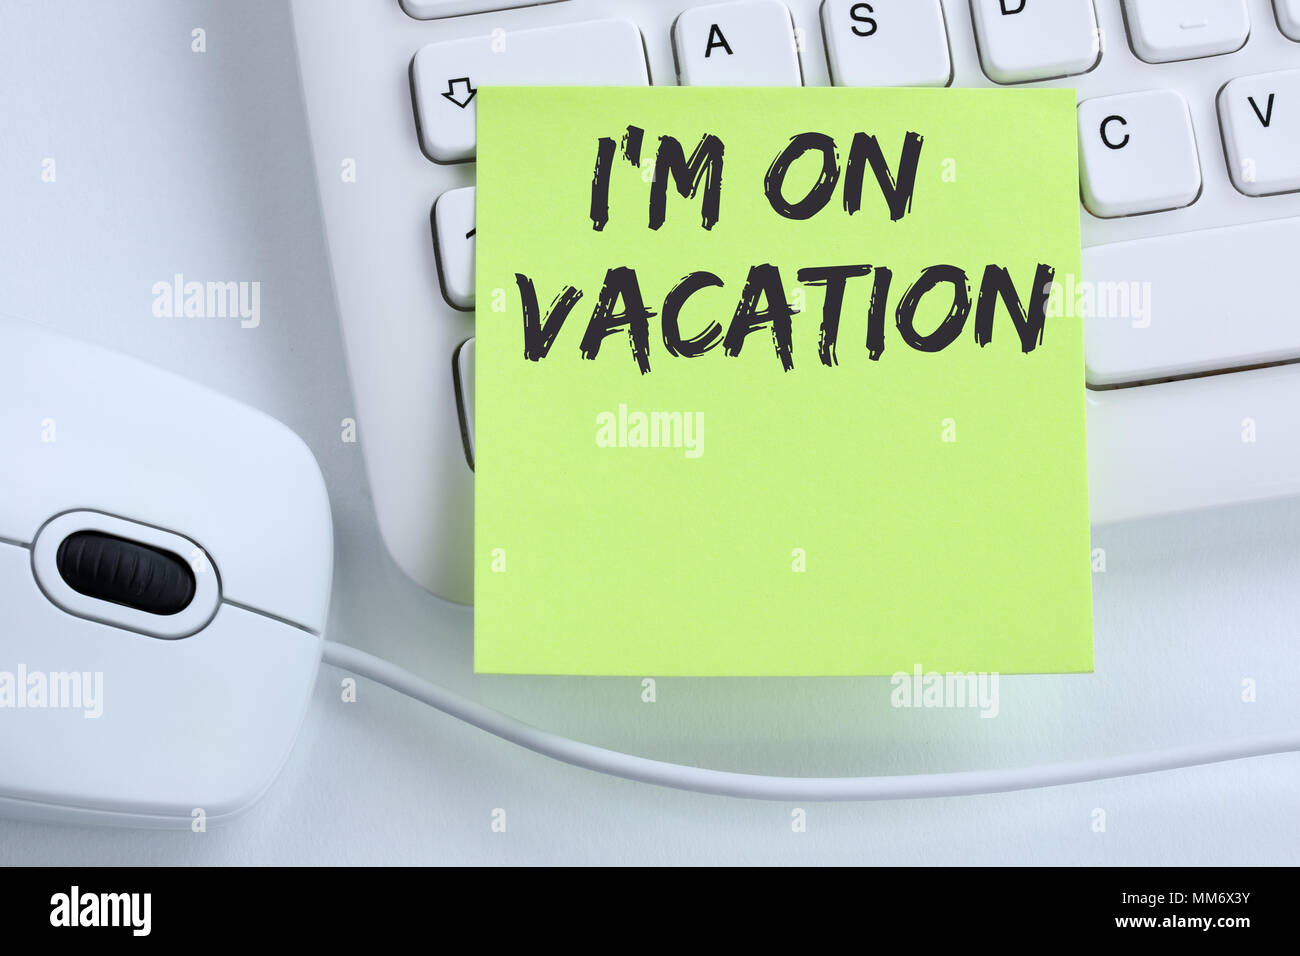 Estoy de vacaciones viajar viajes vacaciones vacaciones relax descanso tiempo libre Concepto de negocio ratón teclado de ordenador Foto de stock